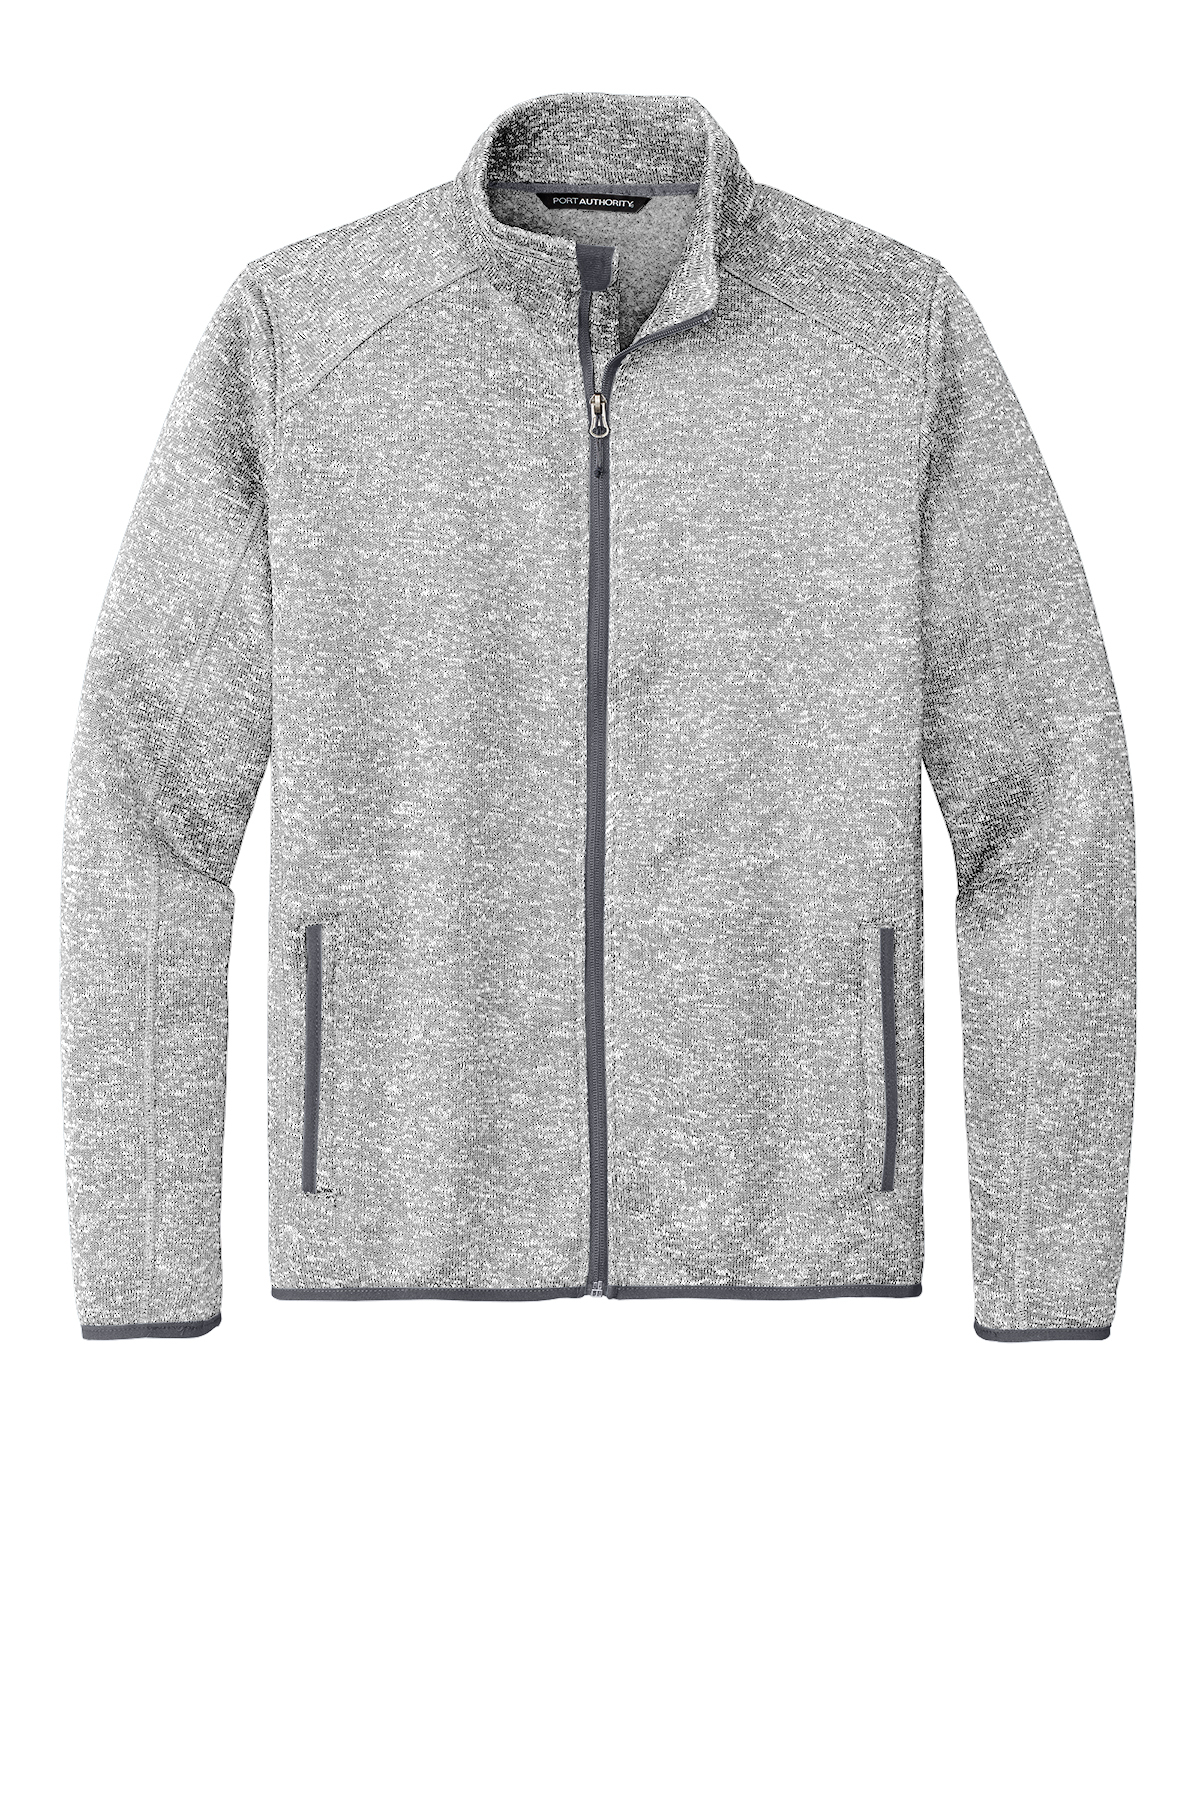 Men's Premium Athletic Soft Sherpa Lined Fleece Zip Up Hoodie Sweater Jacket  (Black,S) - Walmart.com